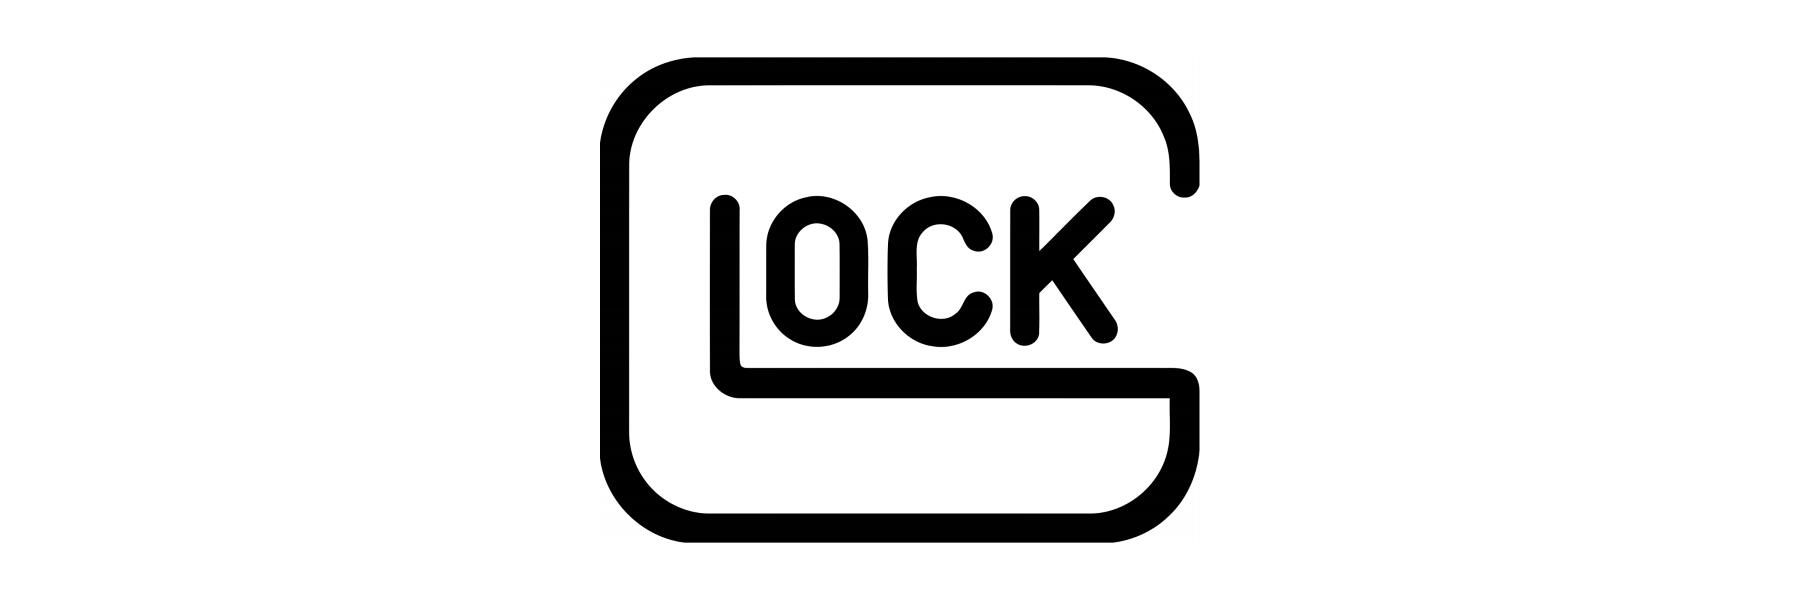  Glock ist einer der bekanntesten Hersteller...